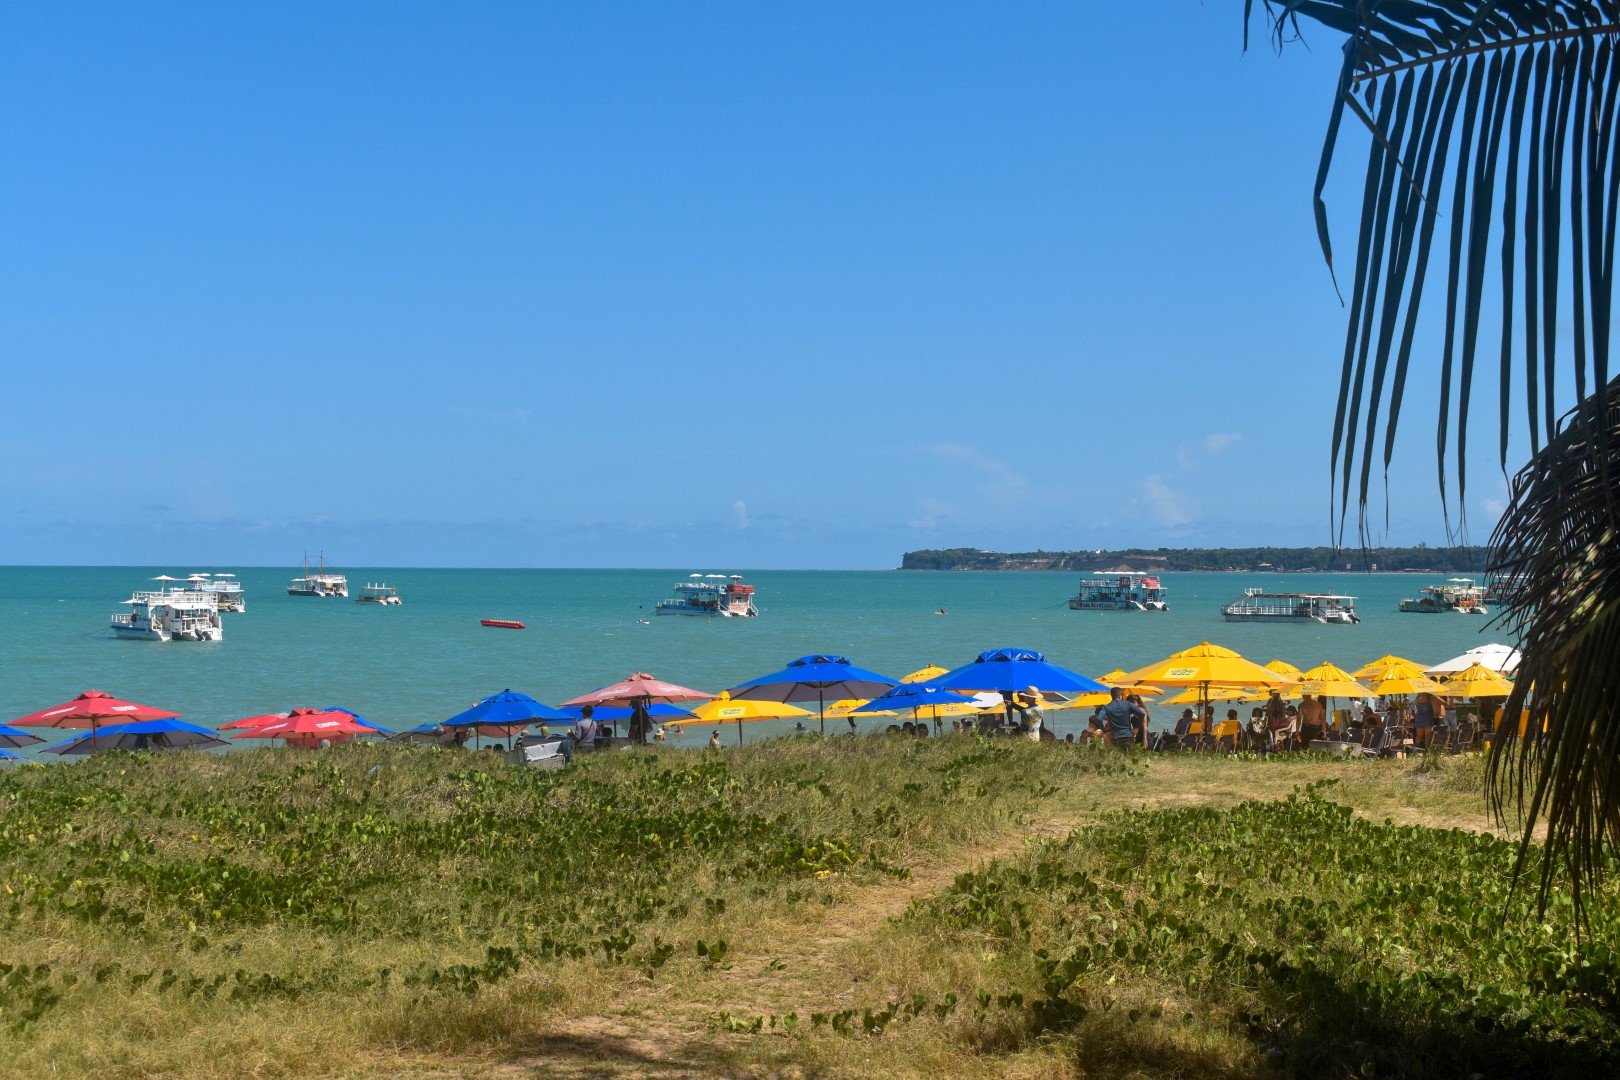 Praia de Tambaú - Avenida Almirante Tamandaré - Tambaú, João Pessoa - State of Paraíba